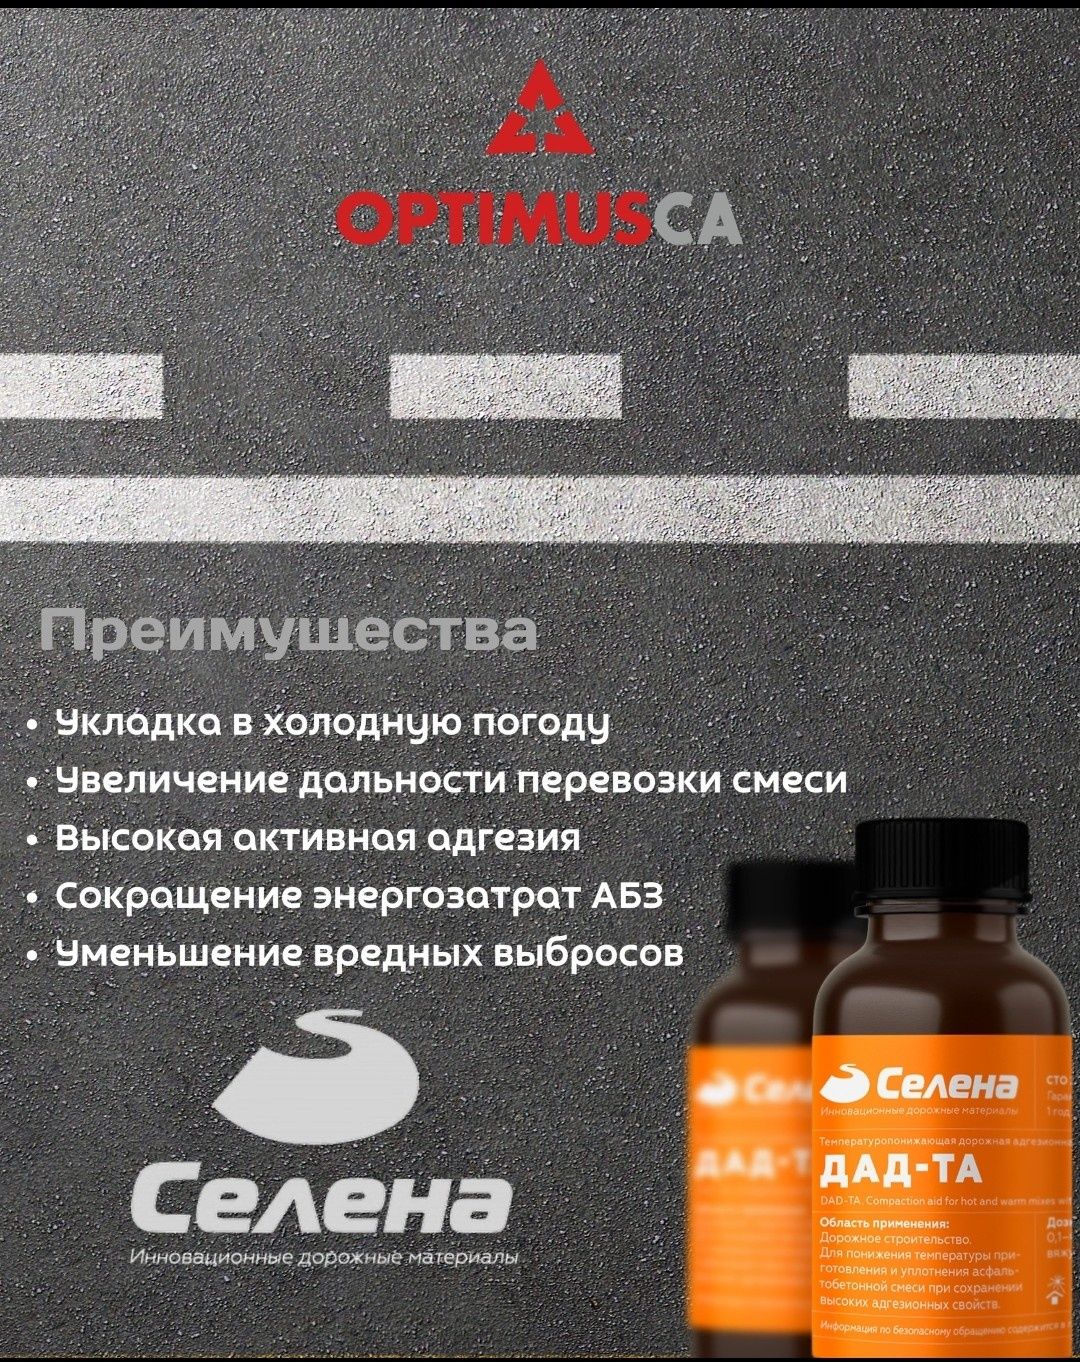 Дорожные адгезионные добавки для теплого асфальта ДАД-ТА от "Селена"